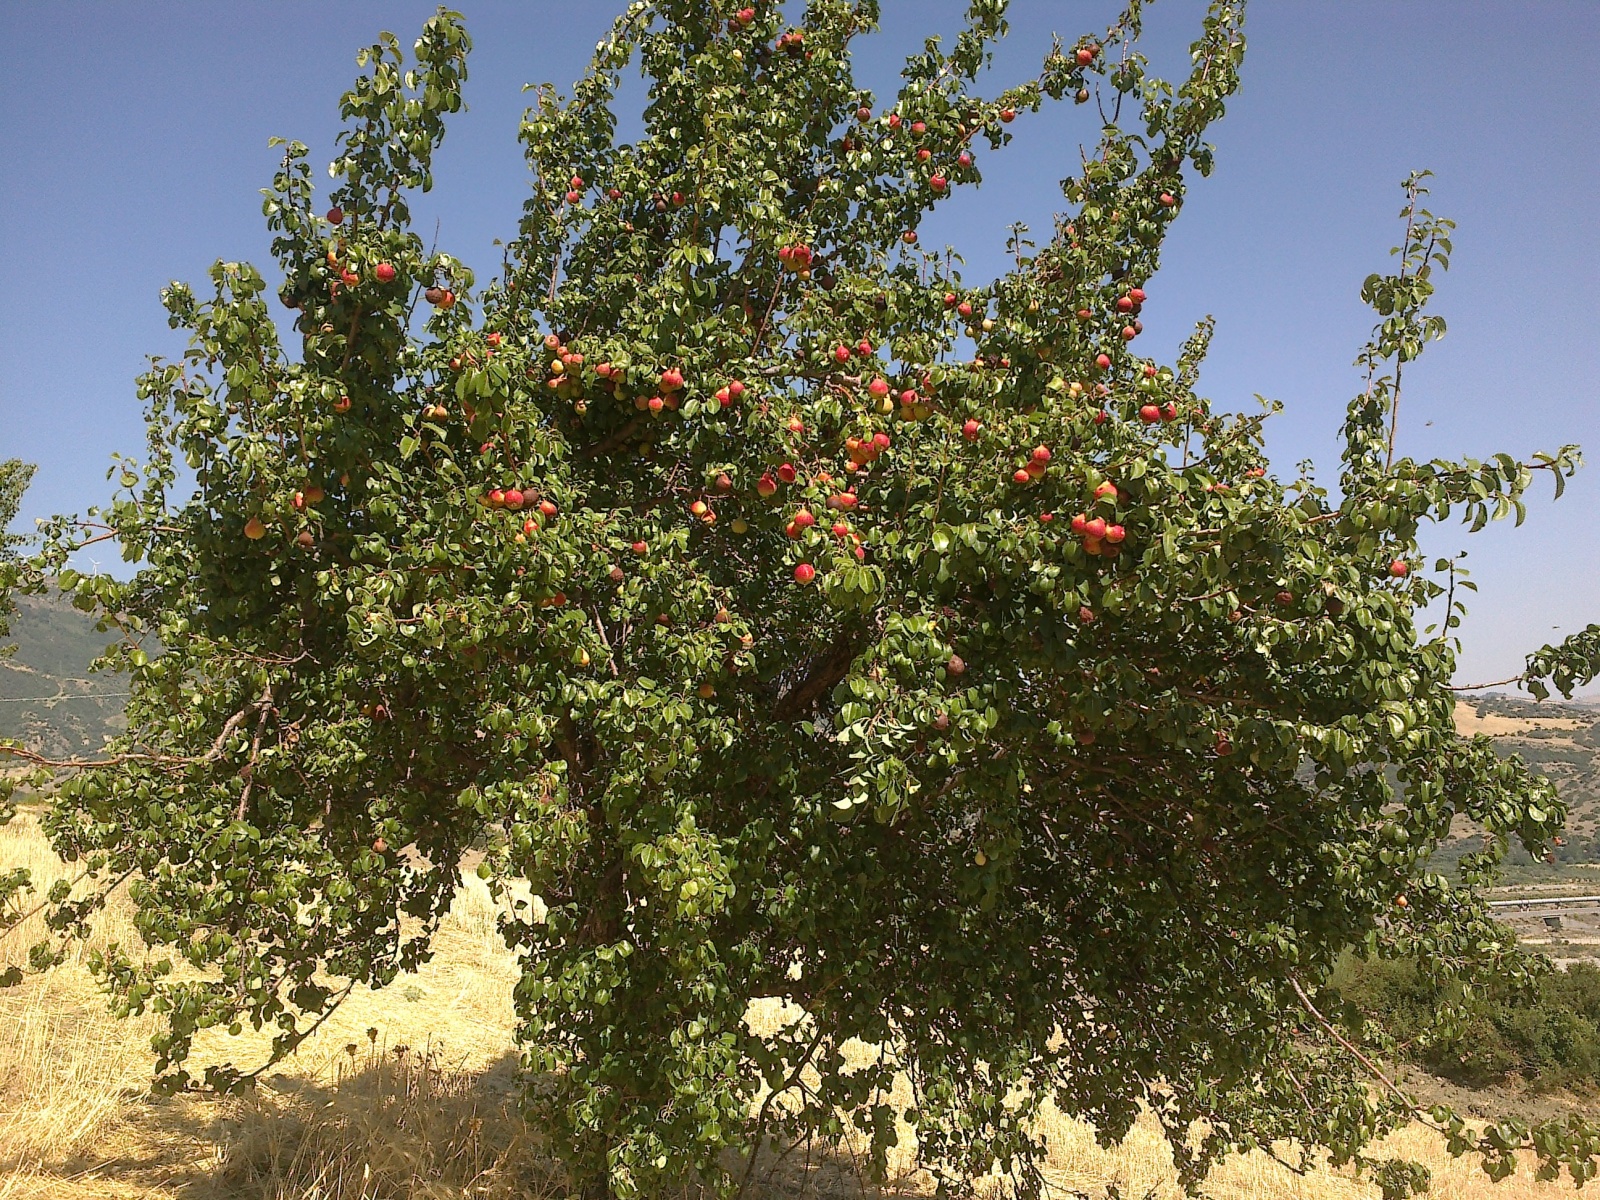 La cosecha de la pera Lady tiene lugar en julio, a escala, y si se almacena bien, se puede encontrar durante todo el año.